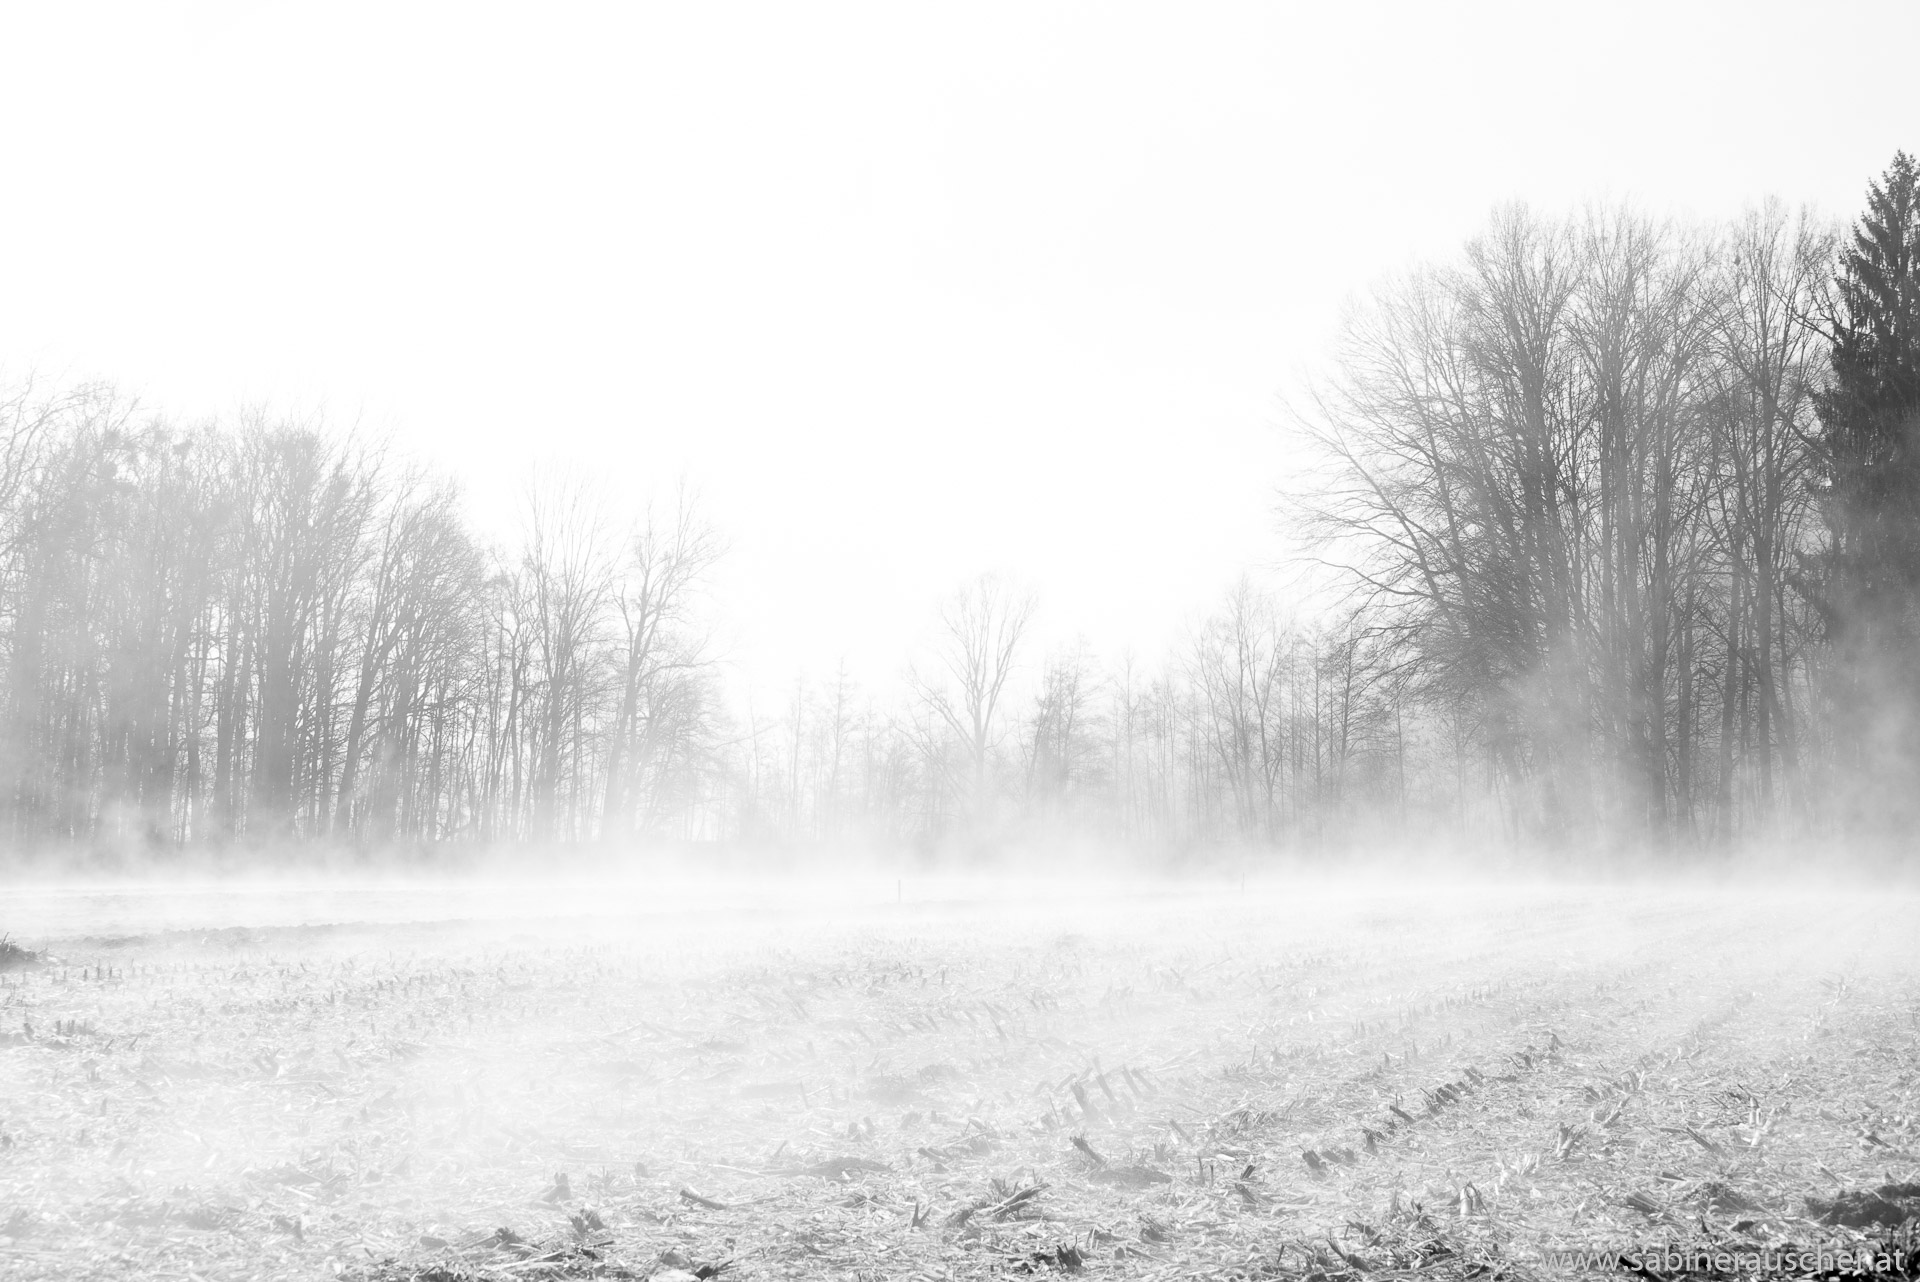 Winter scenery in a field | Winterlandschaft